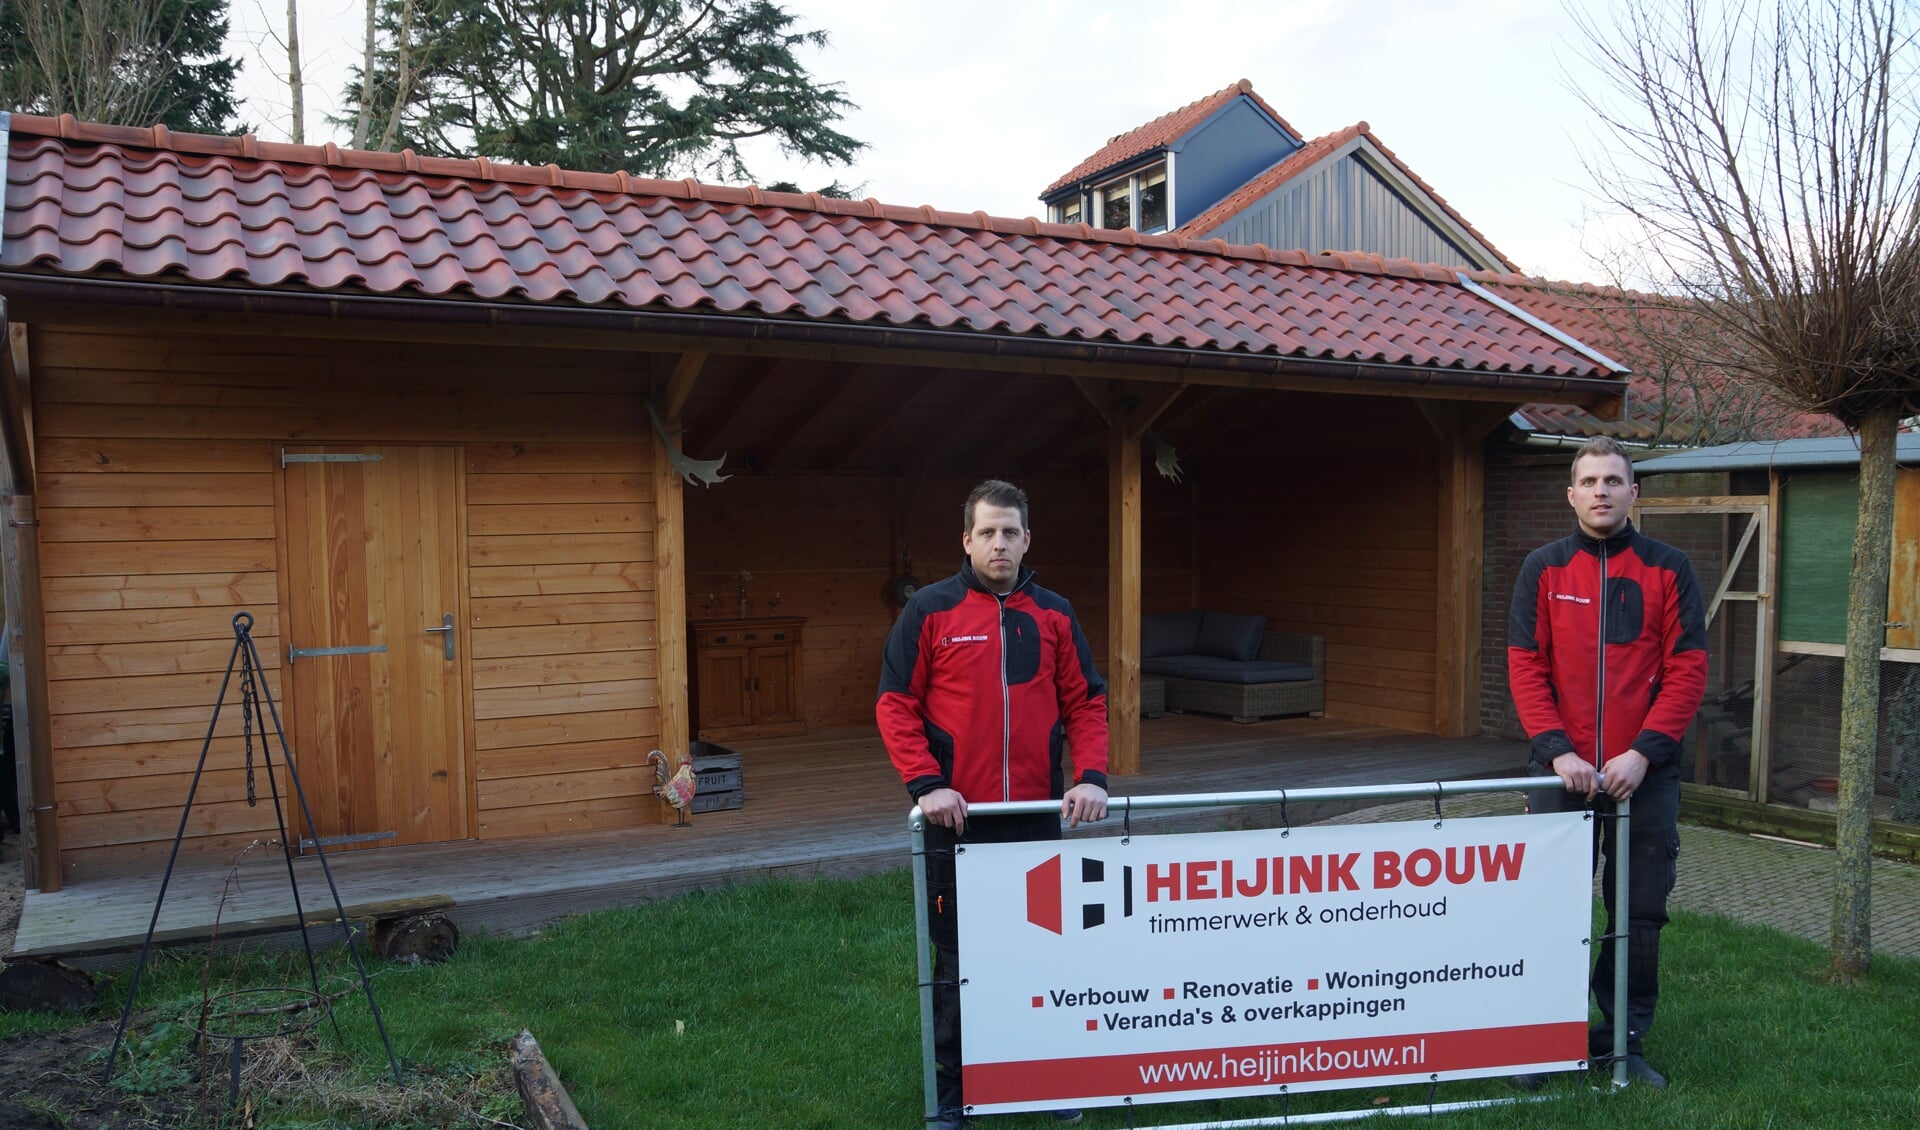 Op de achtergrond een kapschuur van Douglas hout, gerealiseerd door Heijink Bouw uit Zutphen. Foto: PR